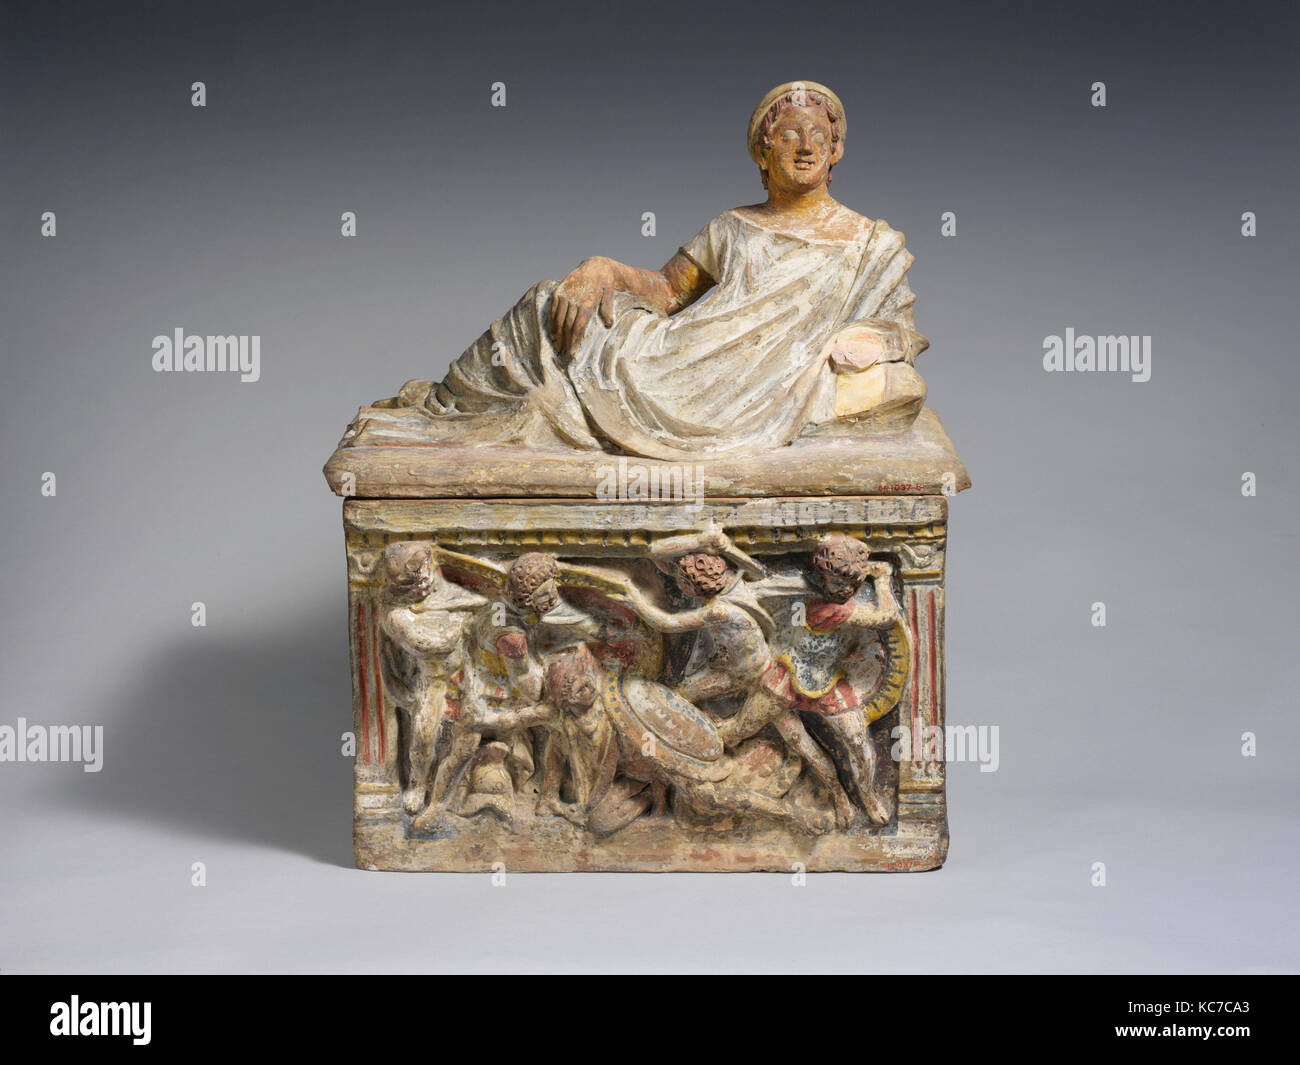 La terracotta urna cineraria, ellenistica, del III secolo A.C., etrusca, terracotta, vernice, H.: 26 a. (66 cm), terrecotte, il fregio Foto Stock